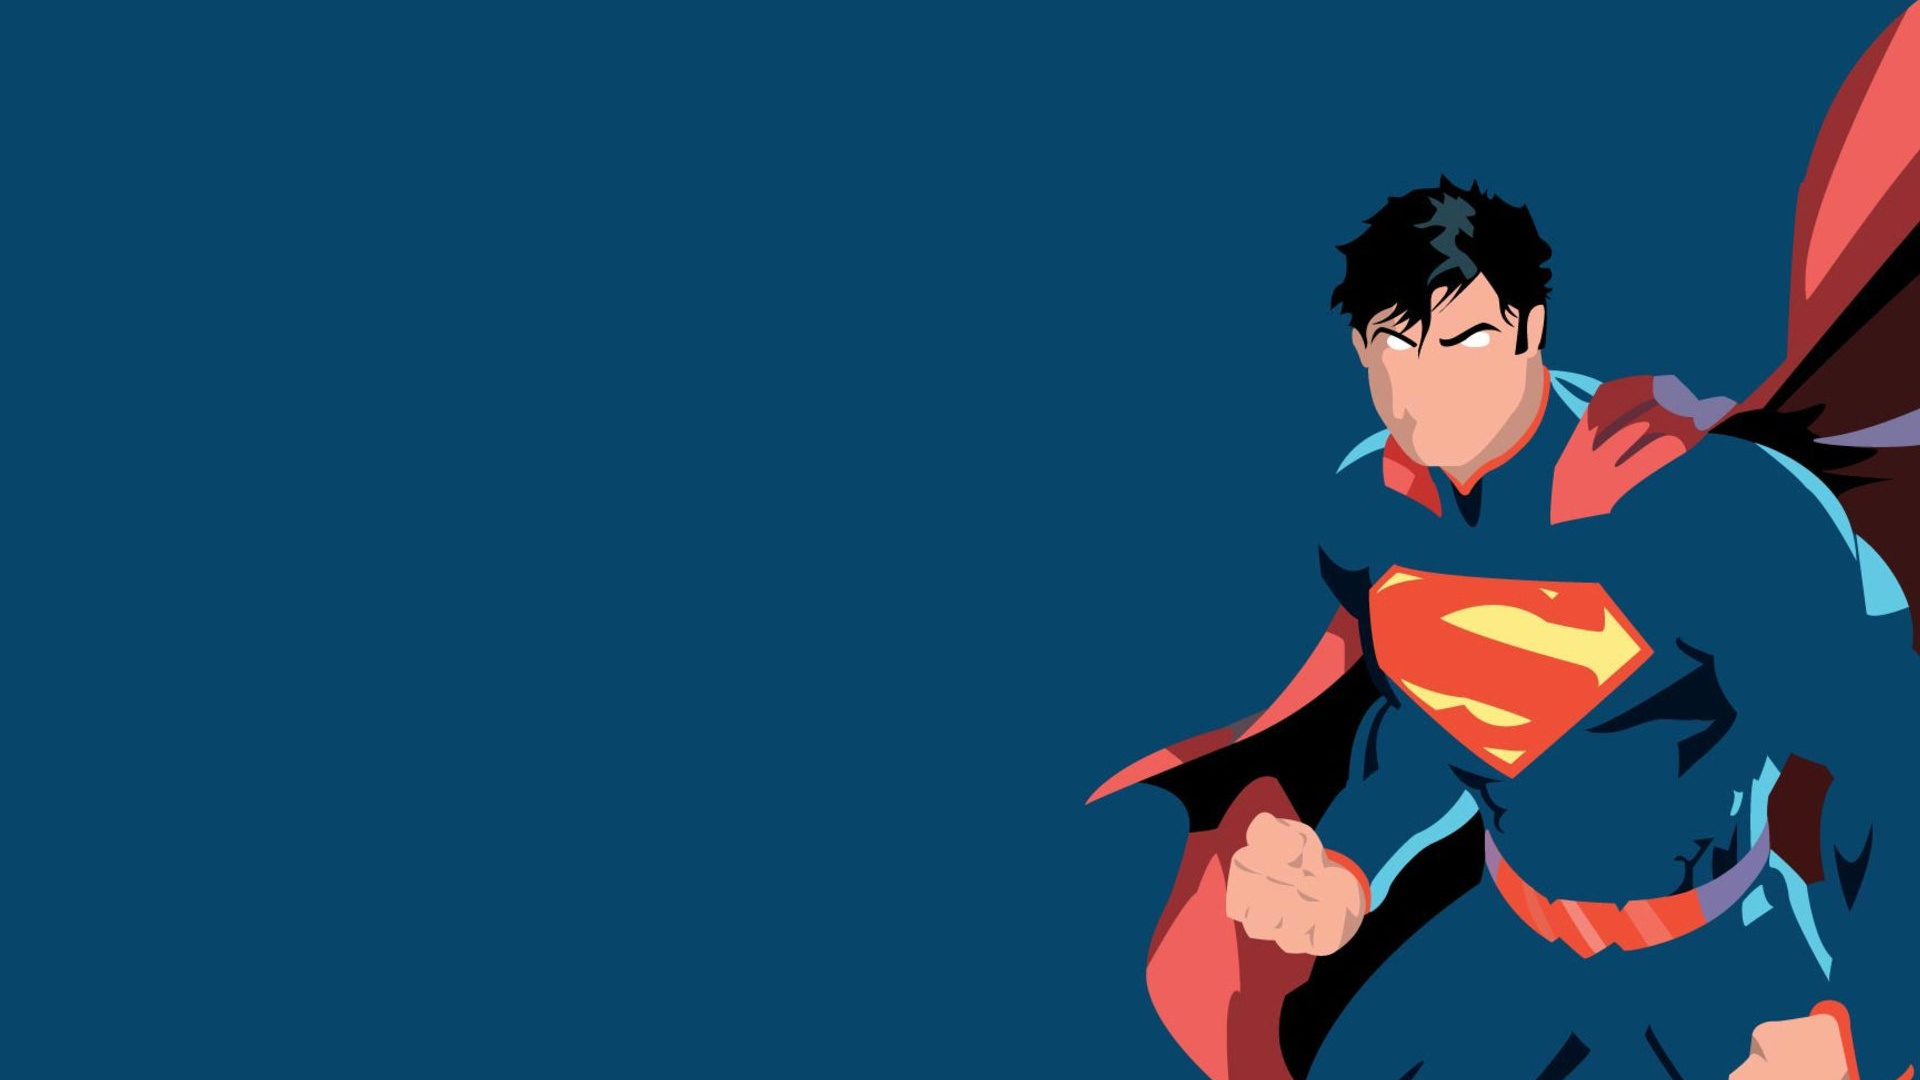 Обои 1920x1080 Супермен, Бэтмен, Логотип супермена, супергерой, вымышленный...